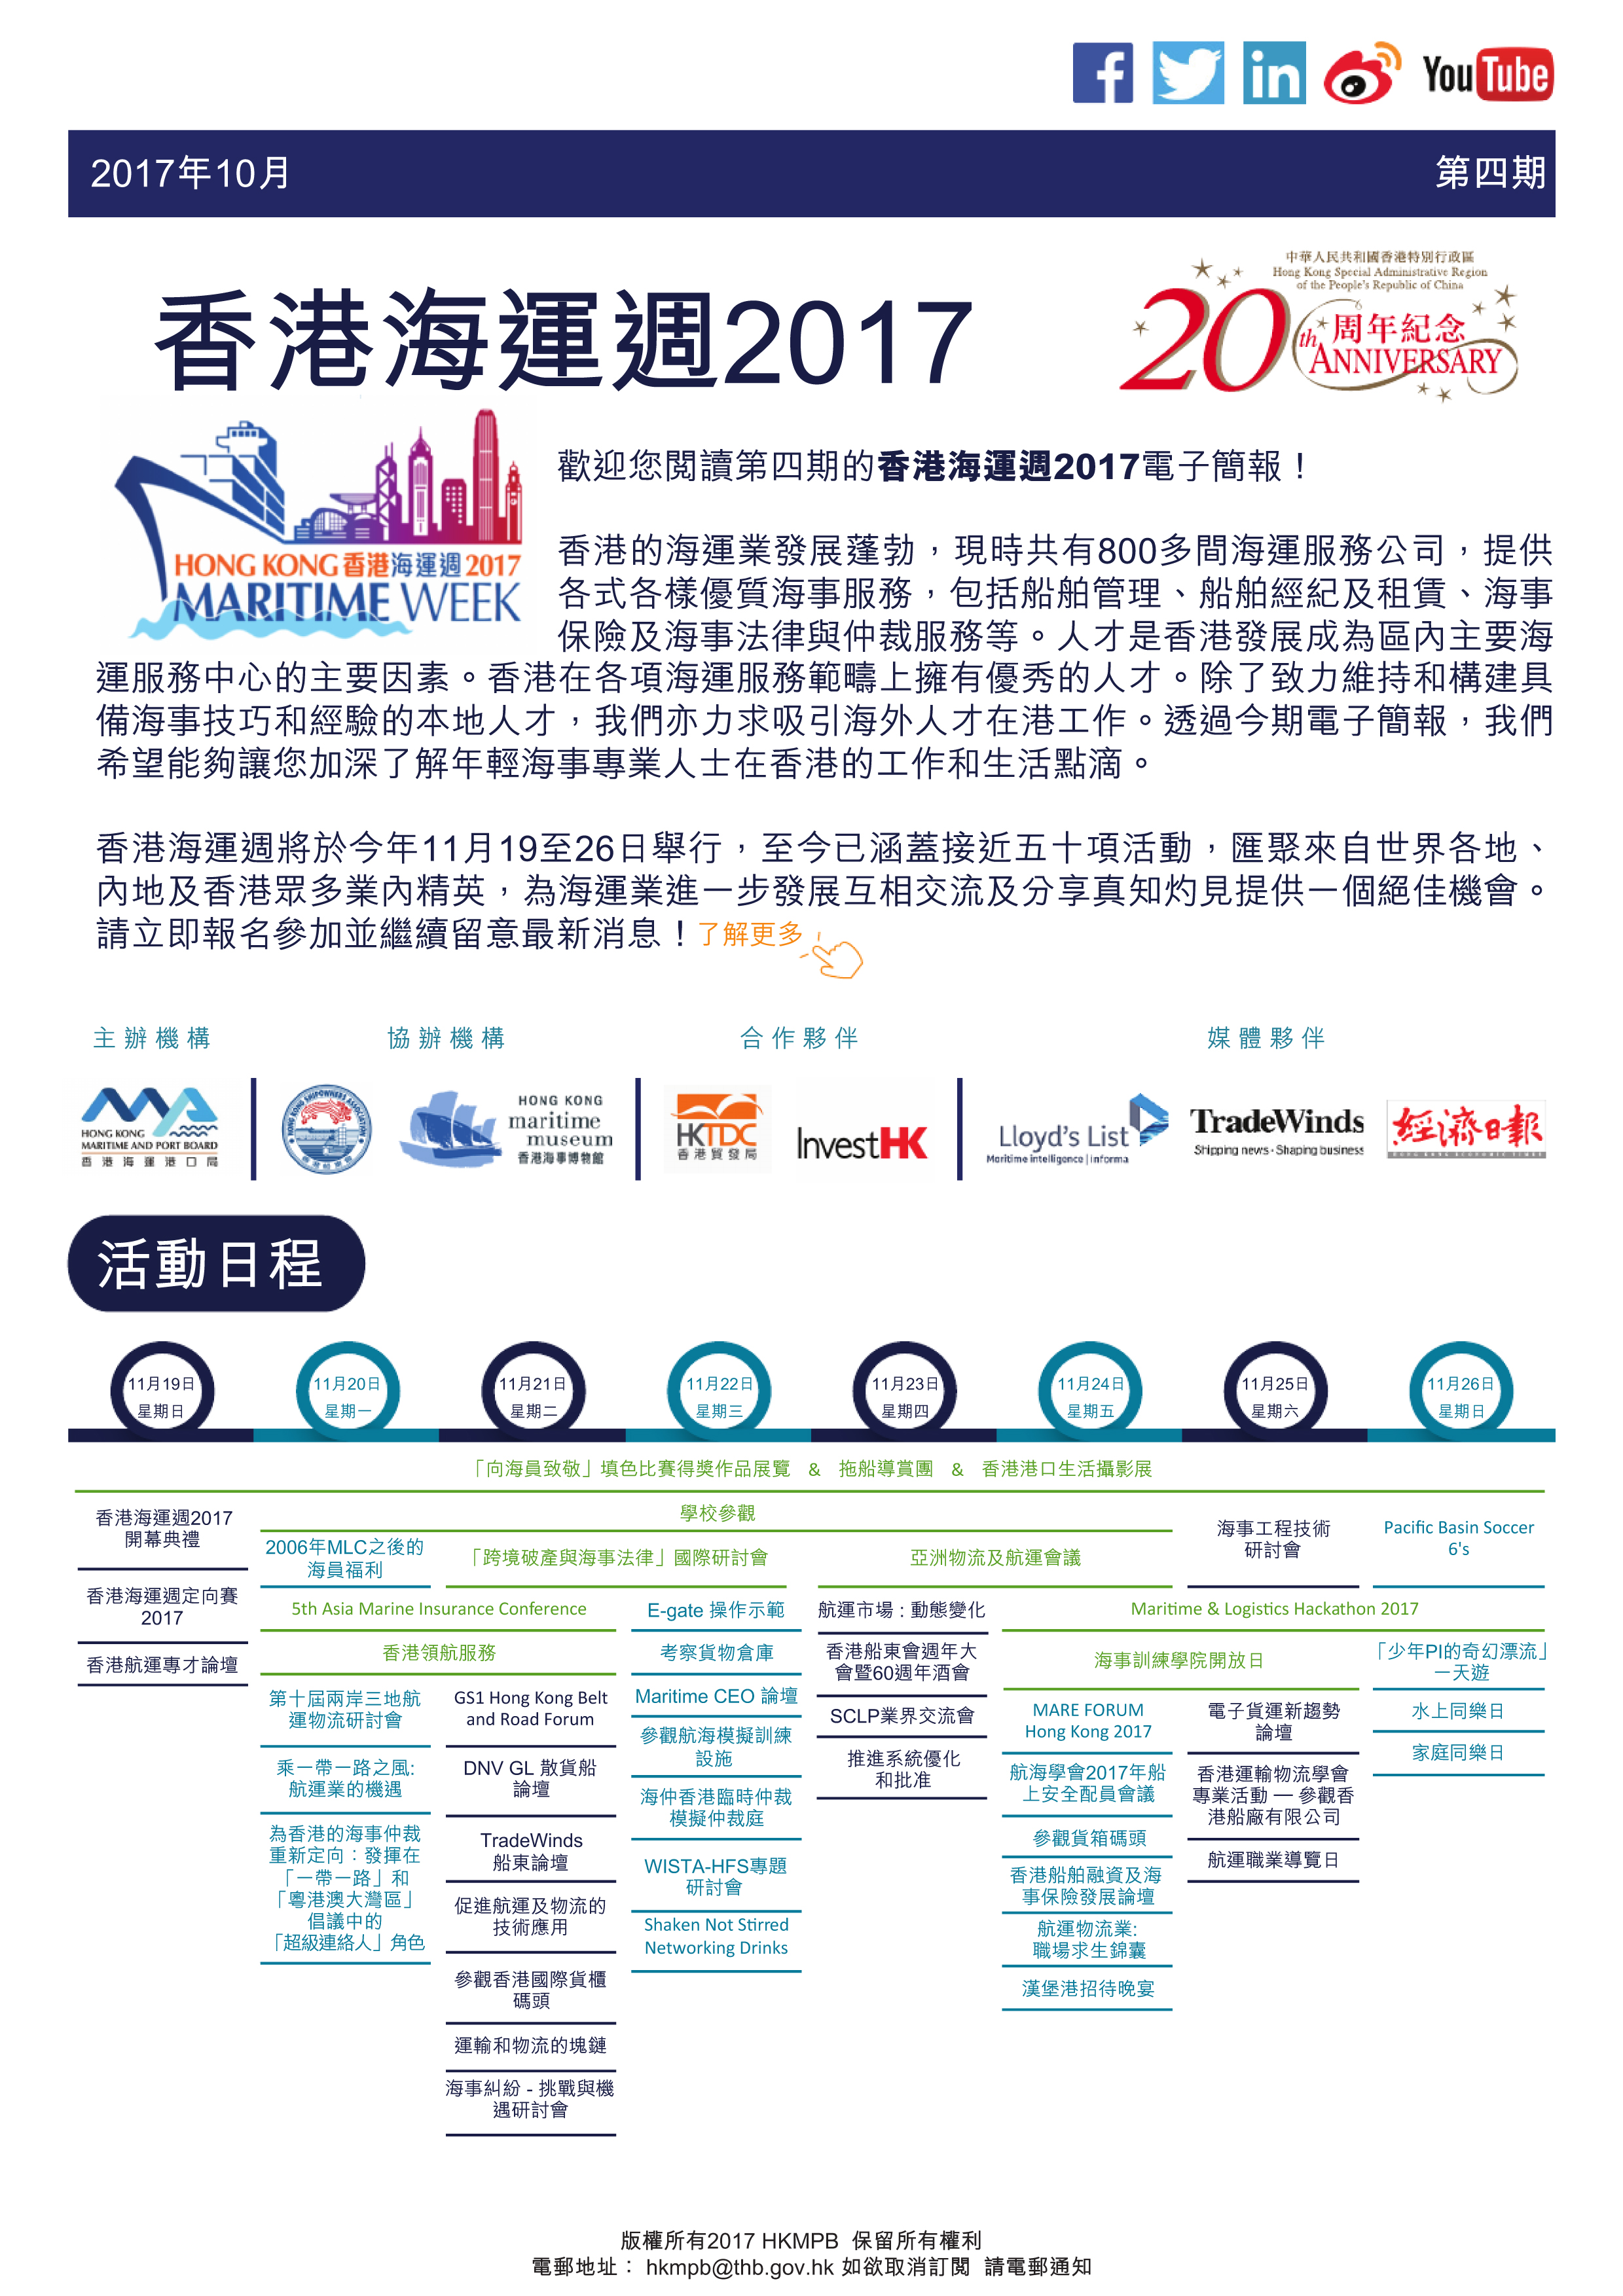 香港海運週2017 電子簡報第4期